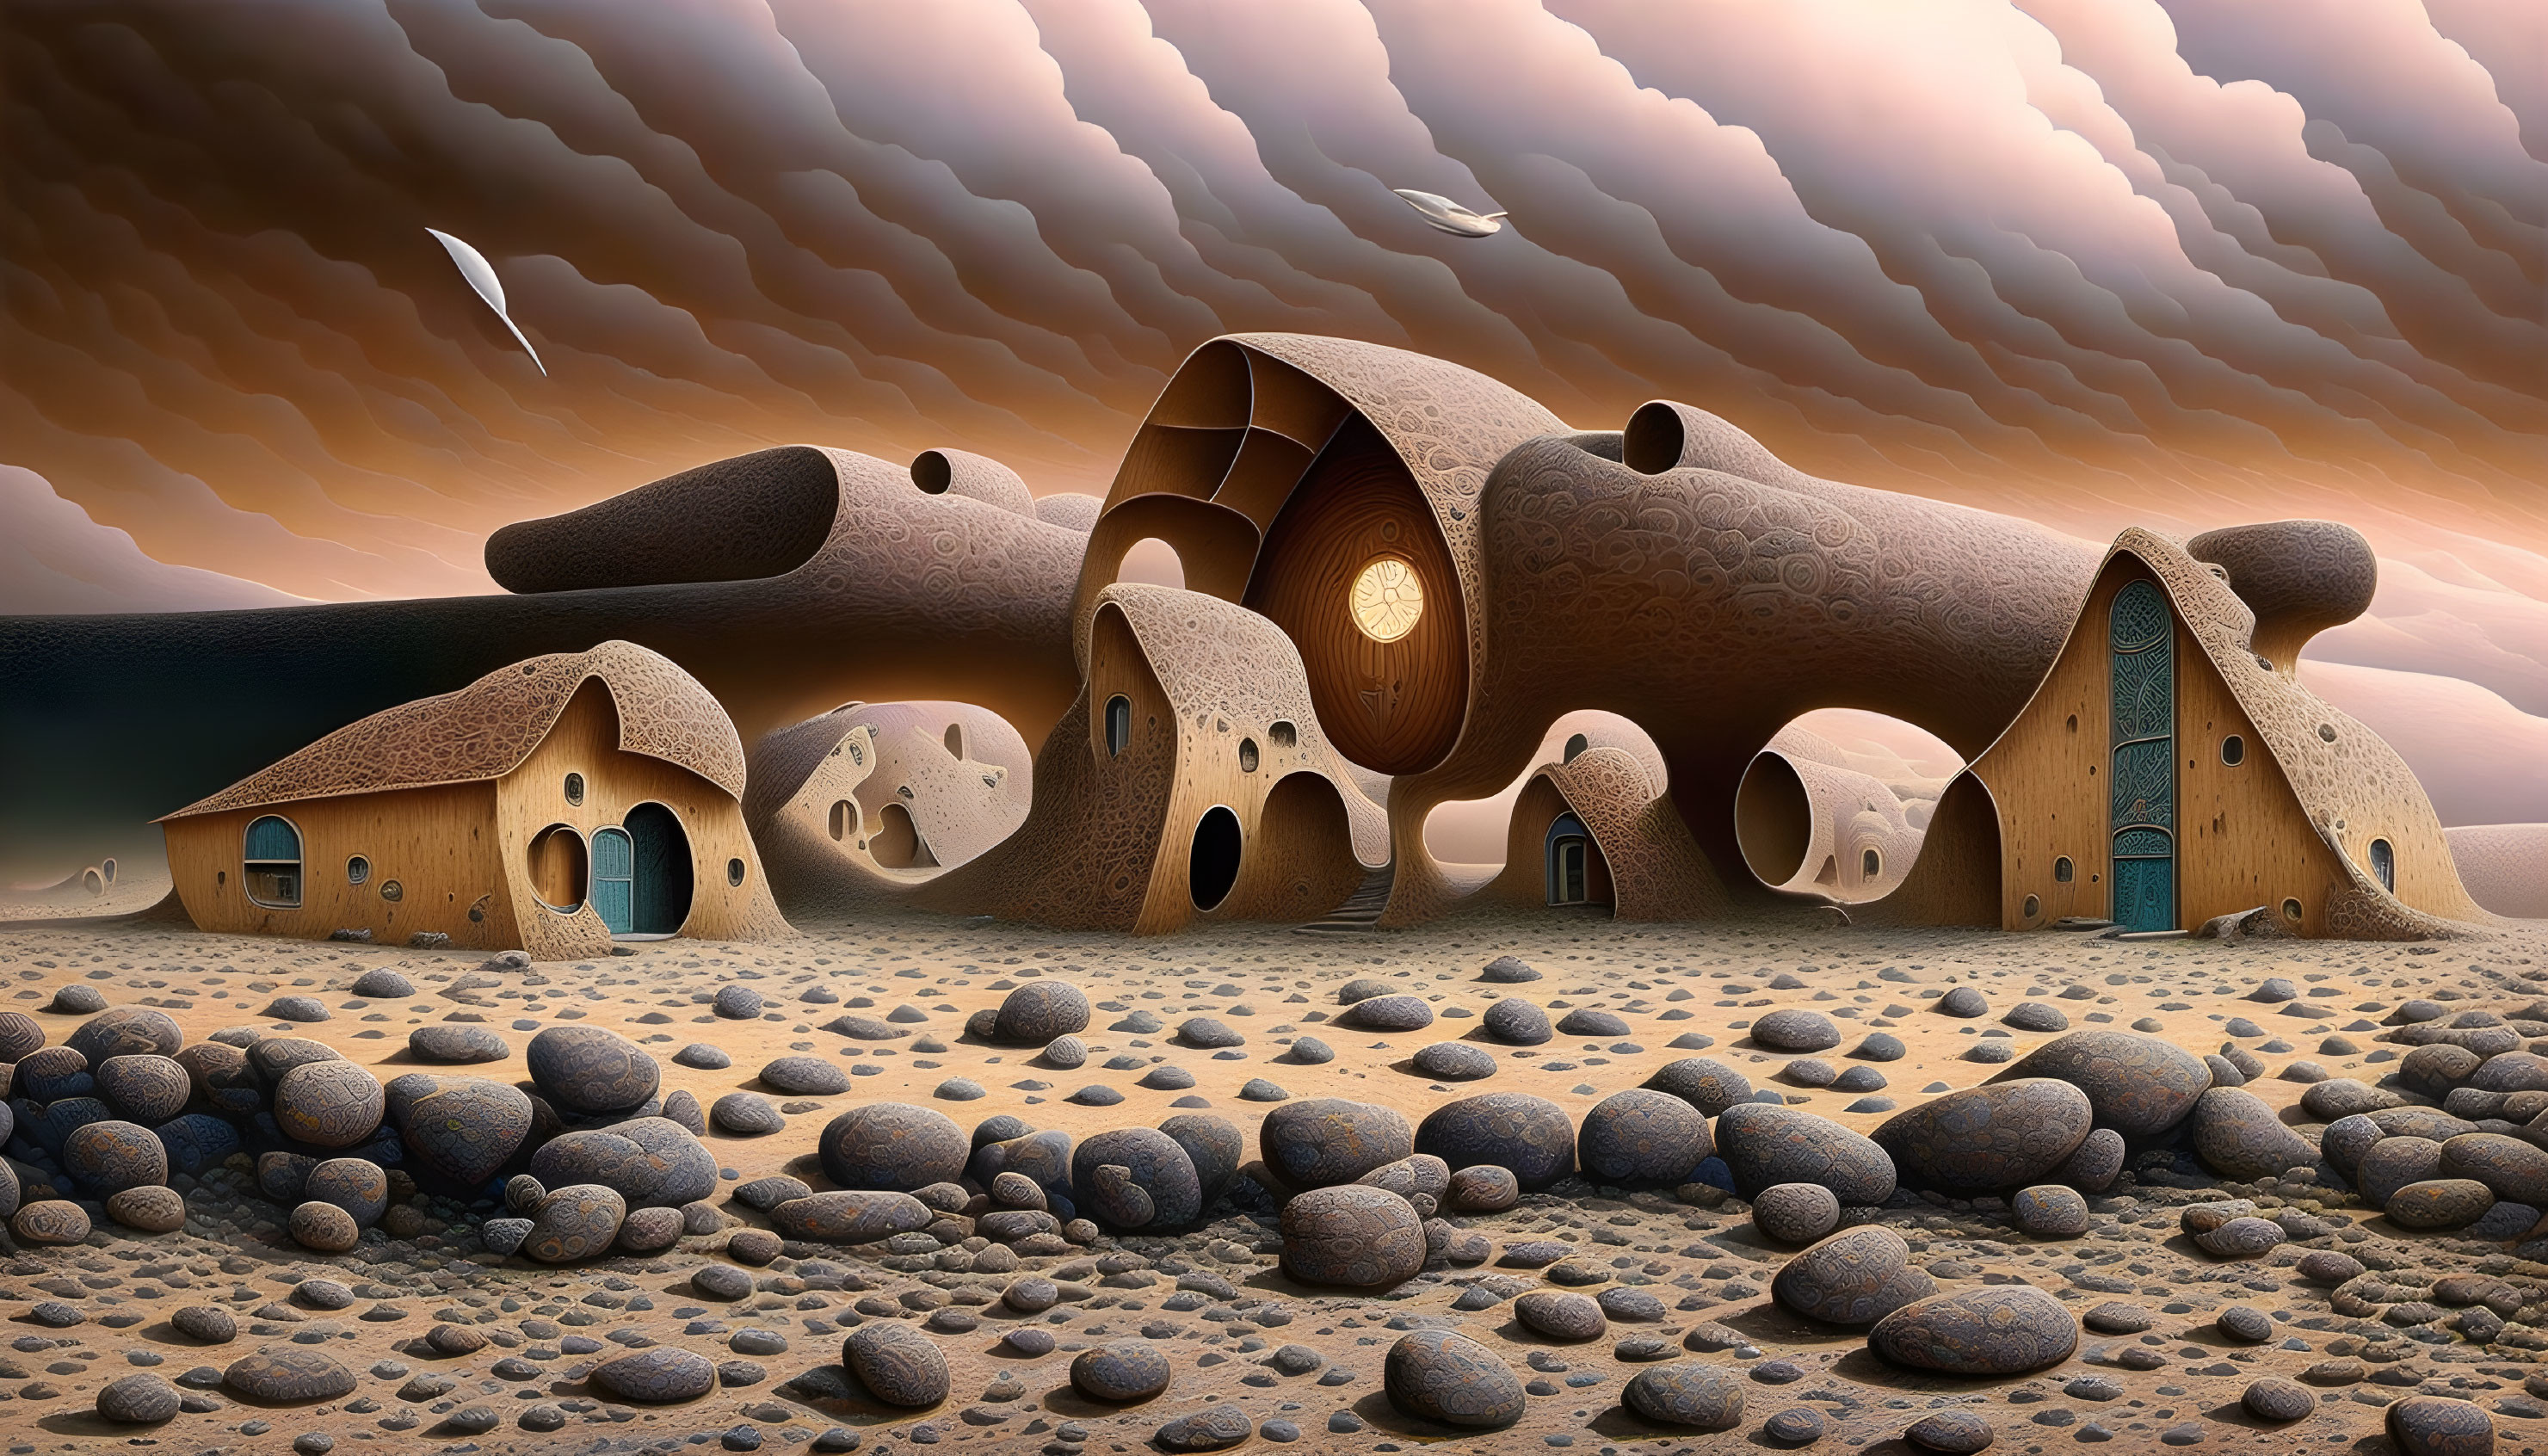 Whimsical surreal artwork: organic-shaped houses on desert landscape